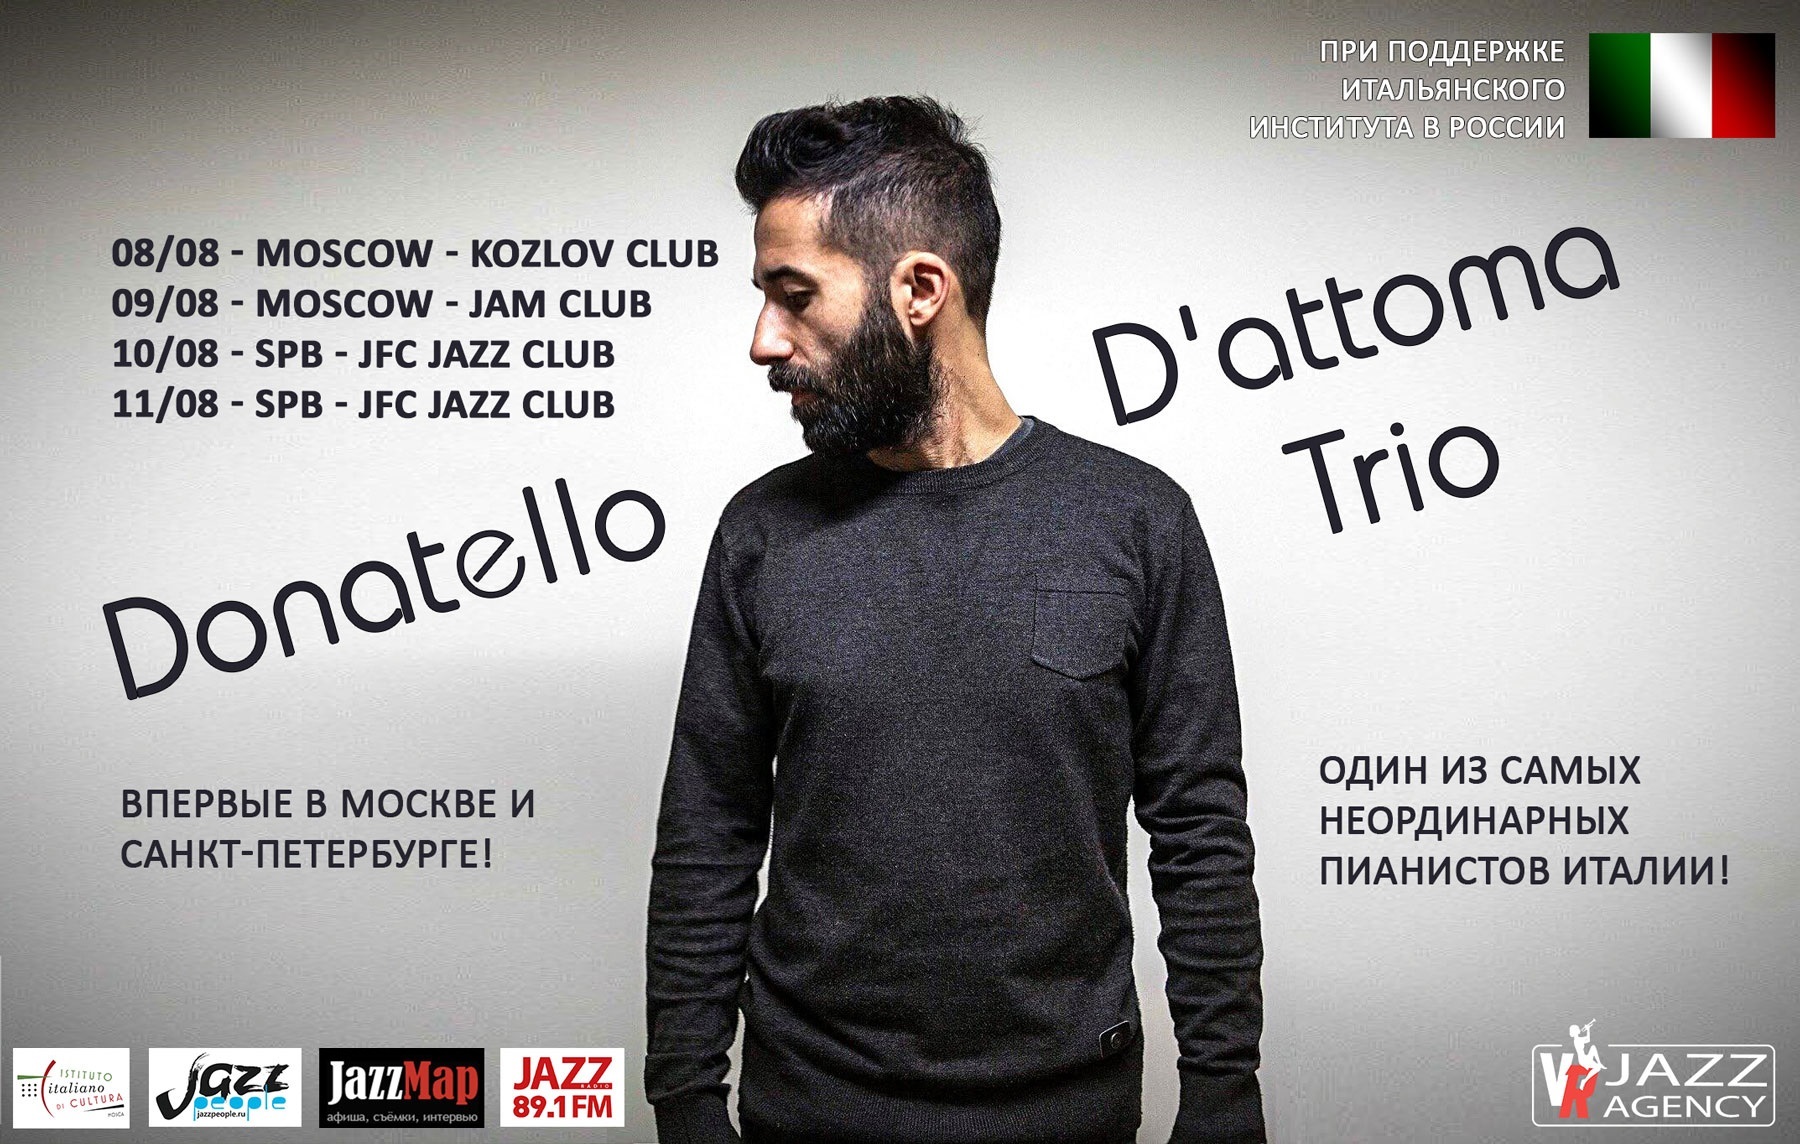 Итальянский пианист Donatello D'Attoma выступит с концертами в Москве и Санкт-Петербурге!